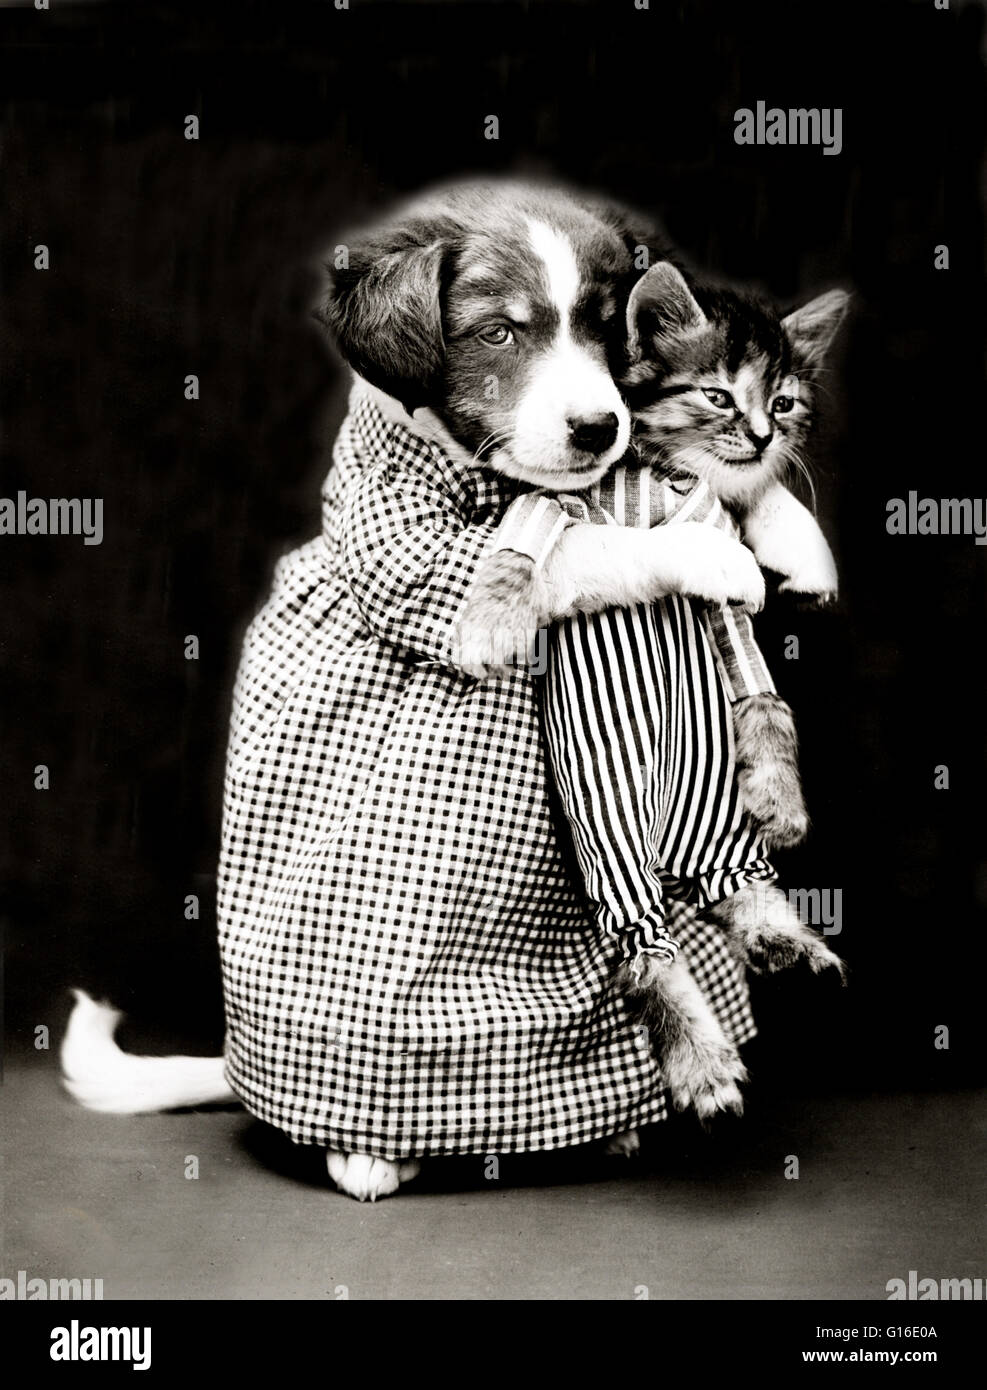 Unter dem Titel: "Die Krankenschwester" zeigt ein Welpe hält eine Kätzchen. Harry Whittier befreit (1879-1953) war ein US-amerikanischer Fotograf, der lebende Tiere gekleidet und posierte in menschlichen Situationen mit Requisiten fotografiert. Seine Tierfotos wurden auf Postkarten, Kalender vorgestellt, Stockfoto